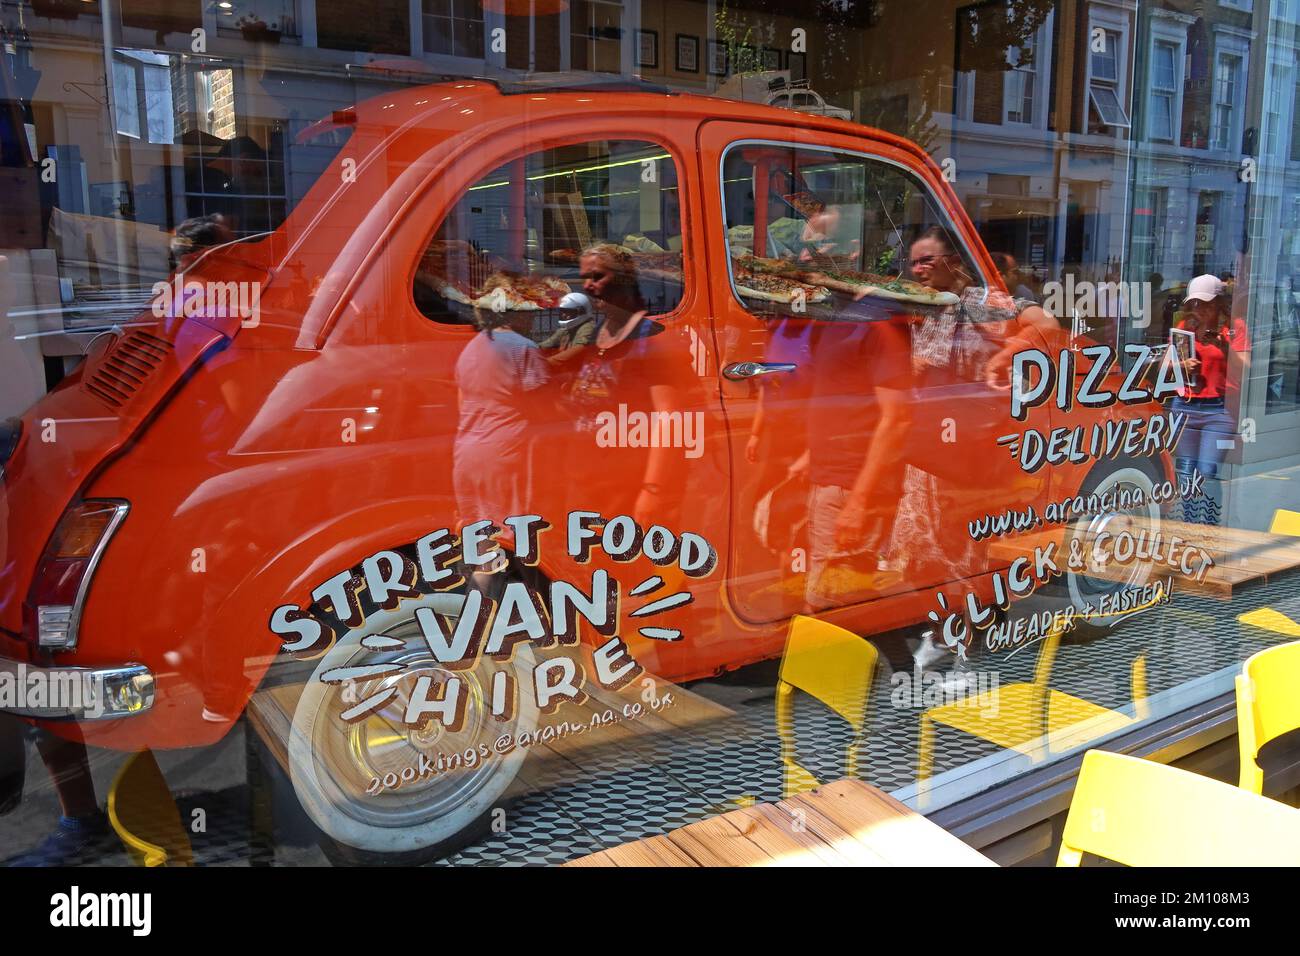 Fiat 500, dans la vitrine de la boutique d'Arancina - 19 Pembridge Rd, RBKC, Londres, Angleterre, Royaume-Uni, W11 3HG, cuisine italienne de rue, arancini et pizza Banque D'Images